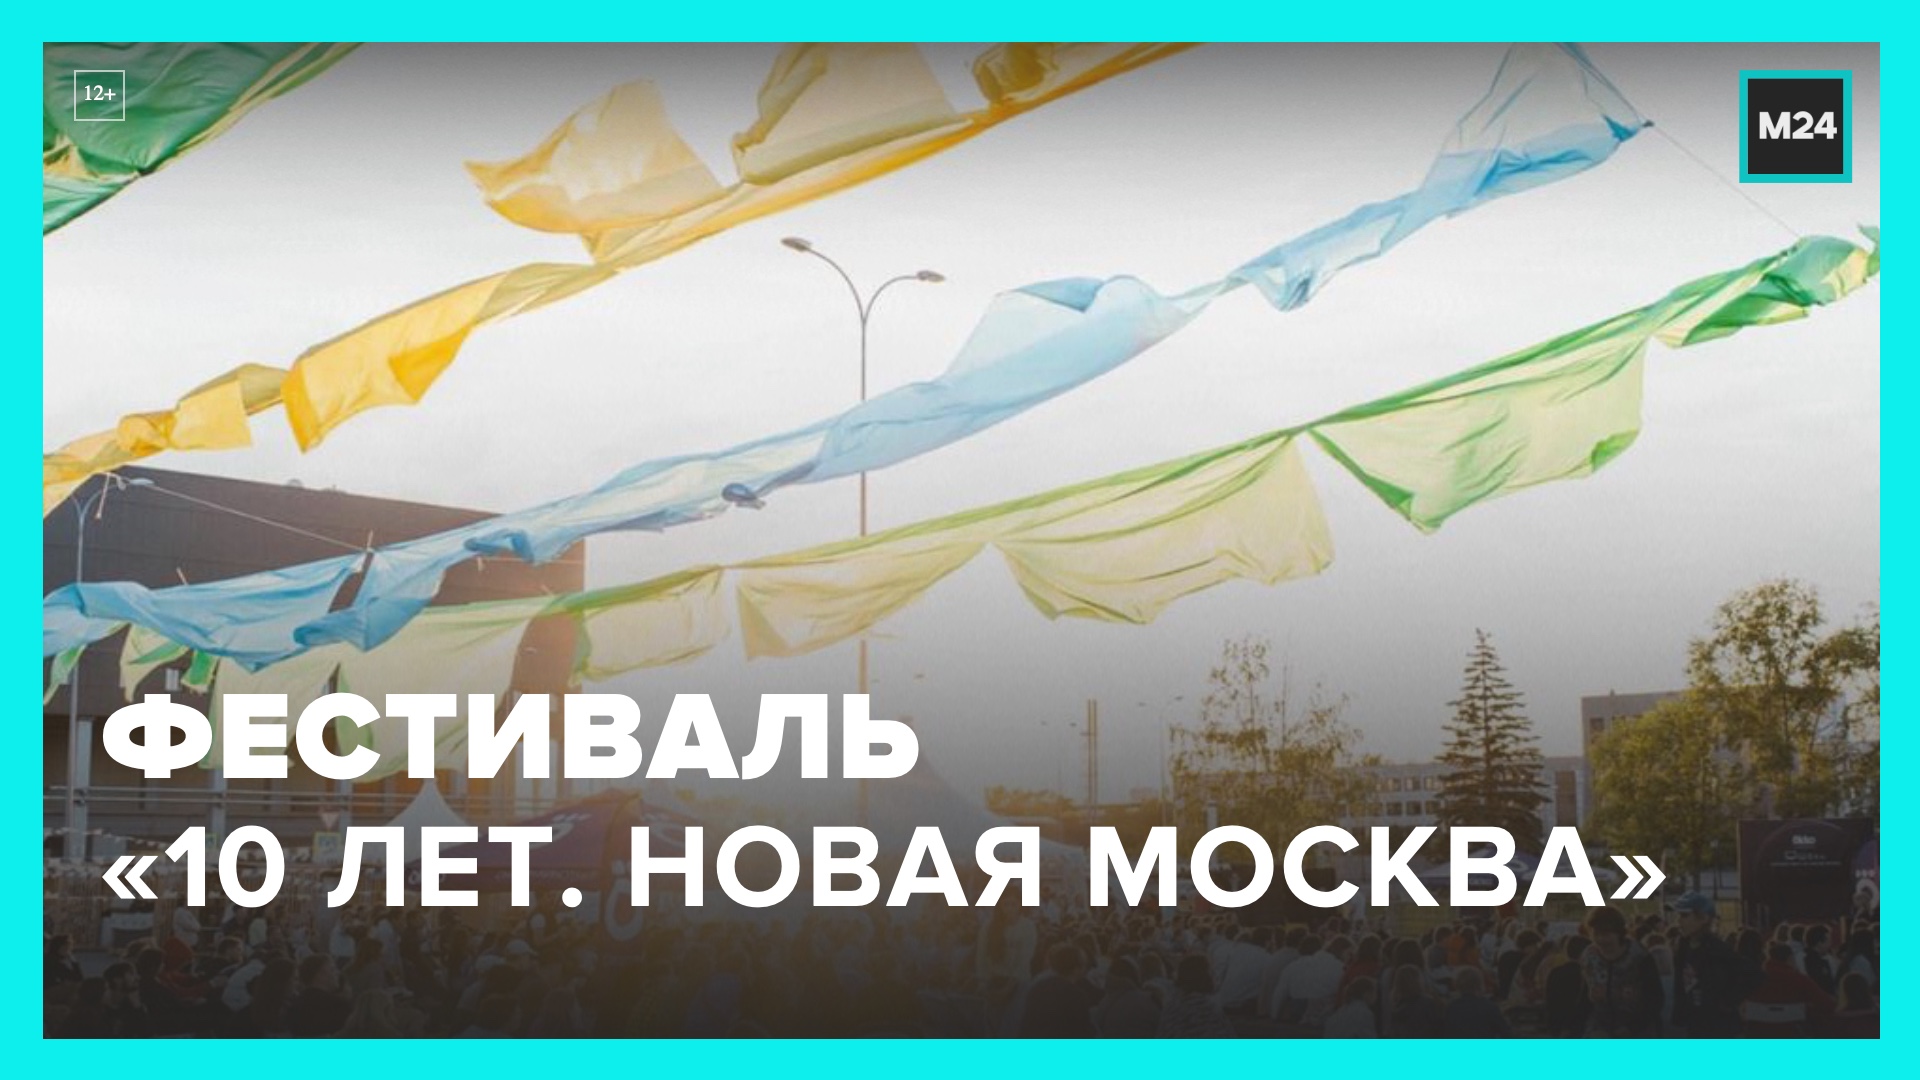 Фестиваль "10 лет. Новая Москва" на Манежной площади продлится до 10 июля – Москва 24